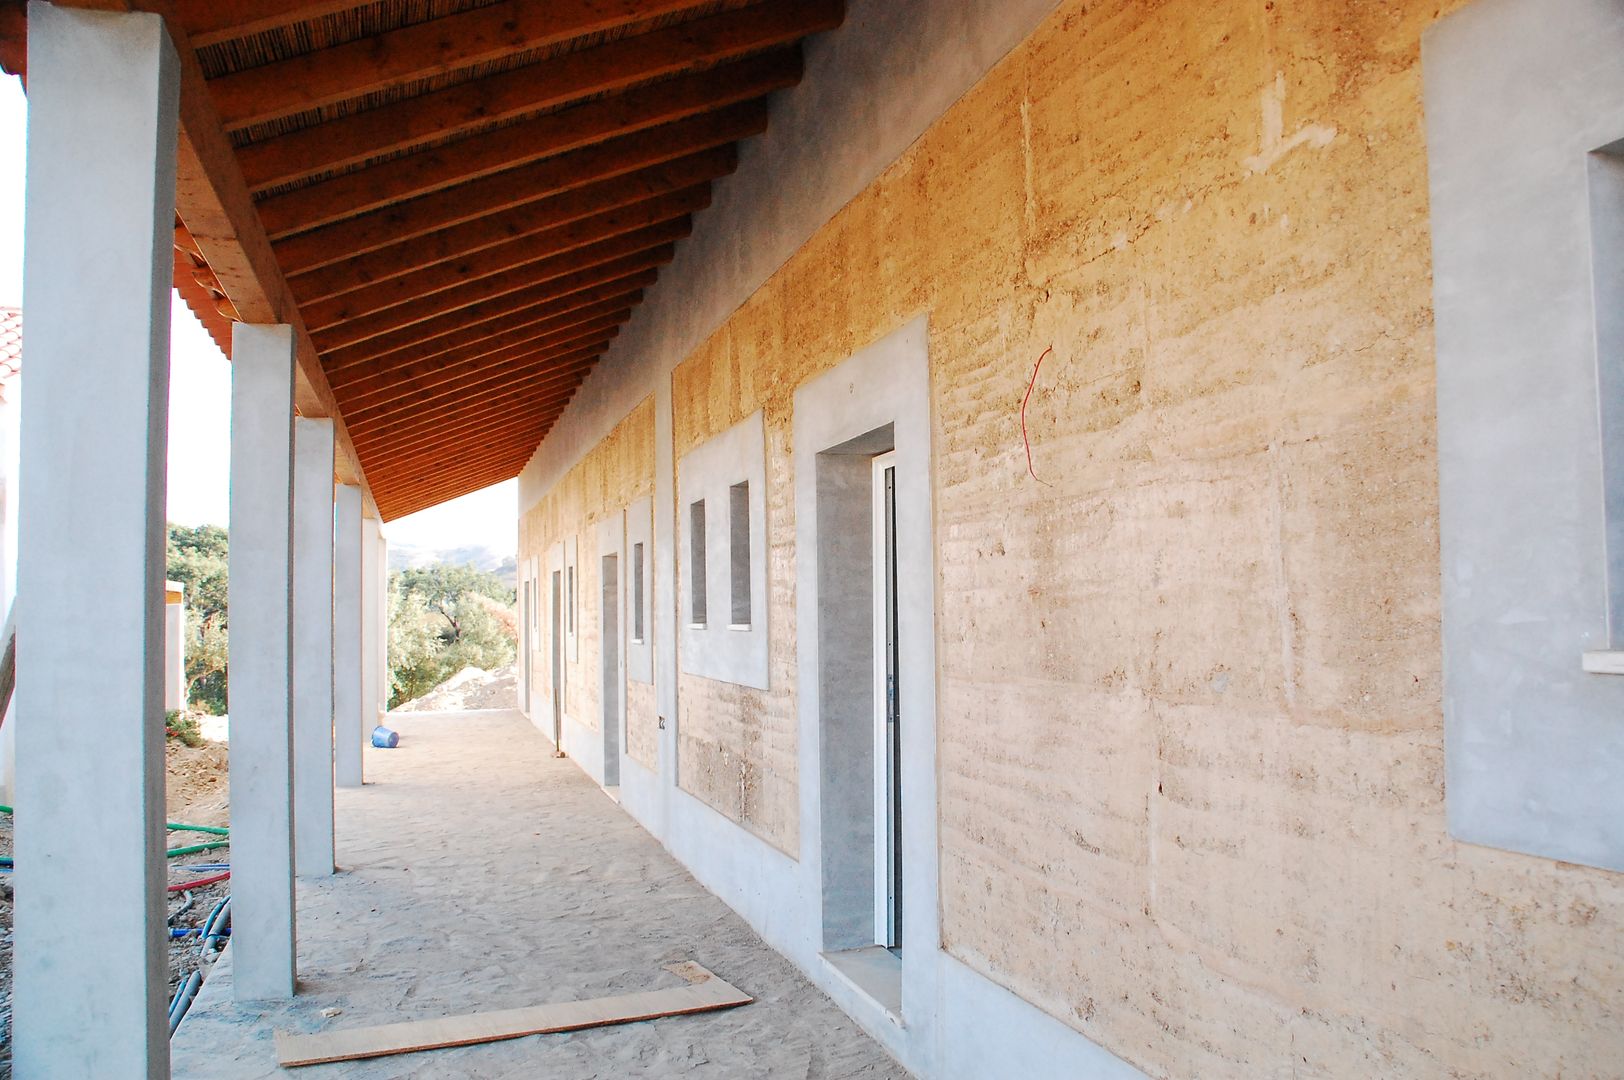 parede exterior em taipa tradicional Arq2T. Atelier Casas rústicas paredes texturadas,taipa,telheiro exterior,construção natural